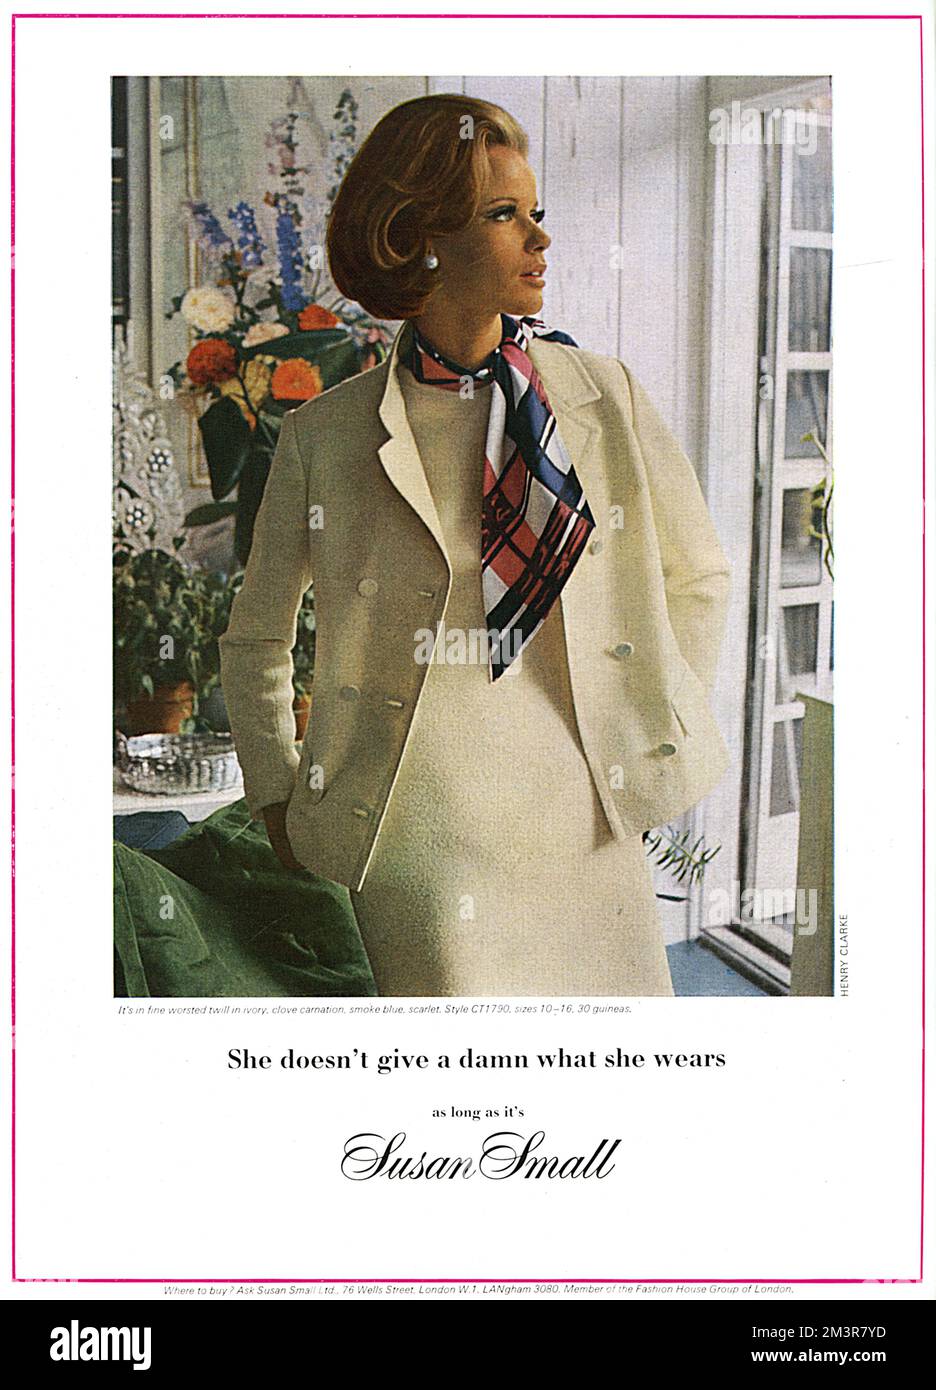 Publicité pour la maison de mode, Susan Small, avec un modèle portant une robe et une veste en sergé peigné fin avec une écharpe attachée autour de son cou. Date: 1965 Banque D'Images